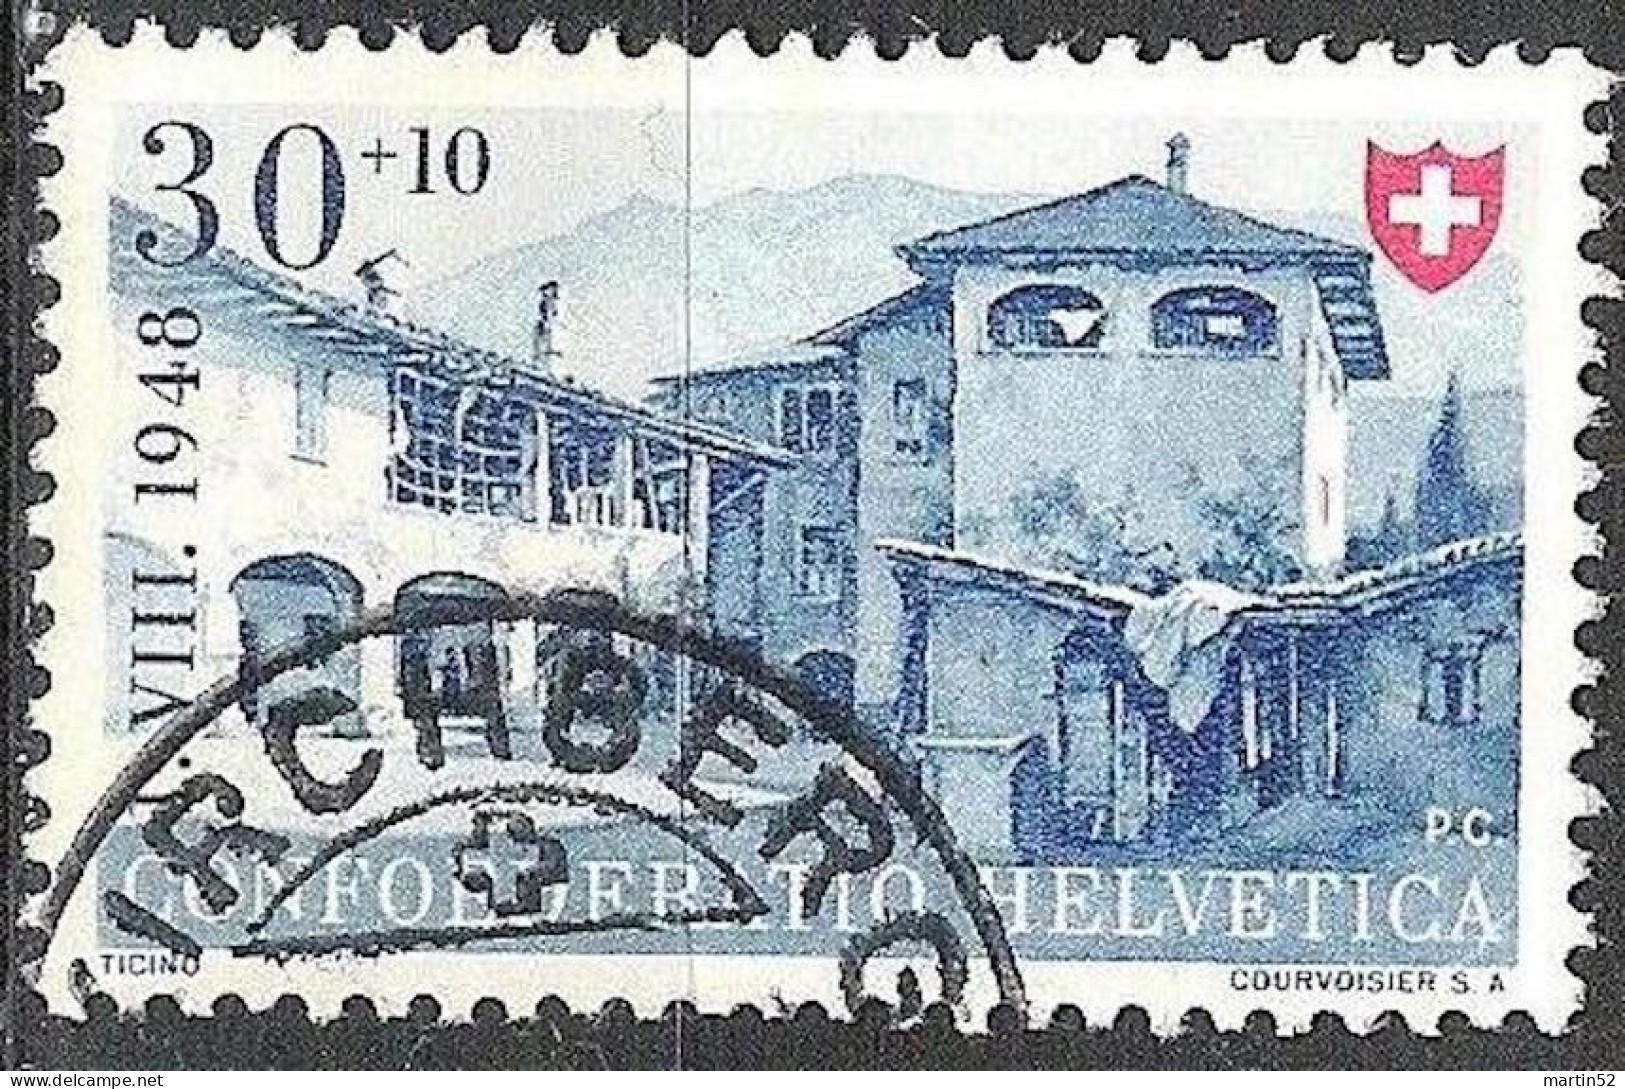 Schweiz Suisse Svizzera Pro Patria 1948: Ticino Tessin Zu WII 41 Mi 511 Yv 460 Halbmond-Stempel KIRCHBERG (Zu CHF 13.00) - Used Stamps